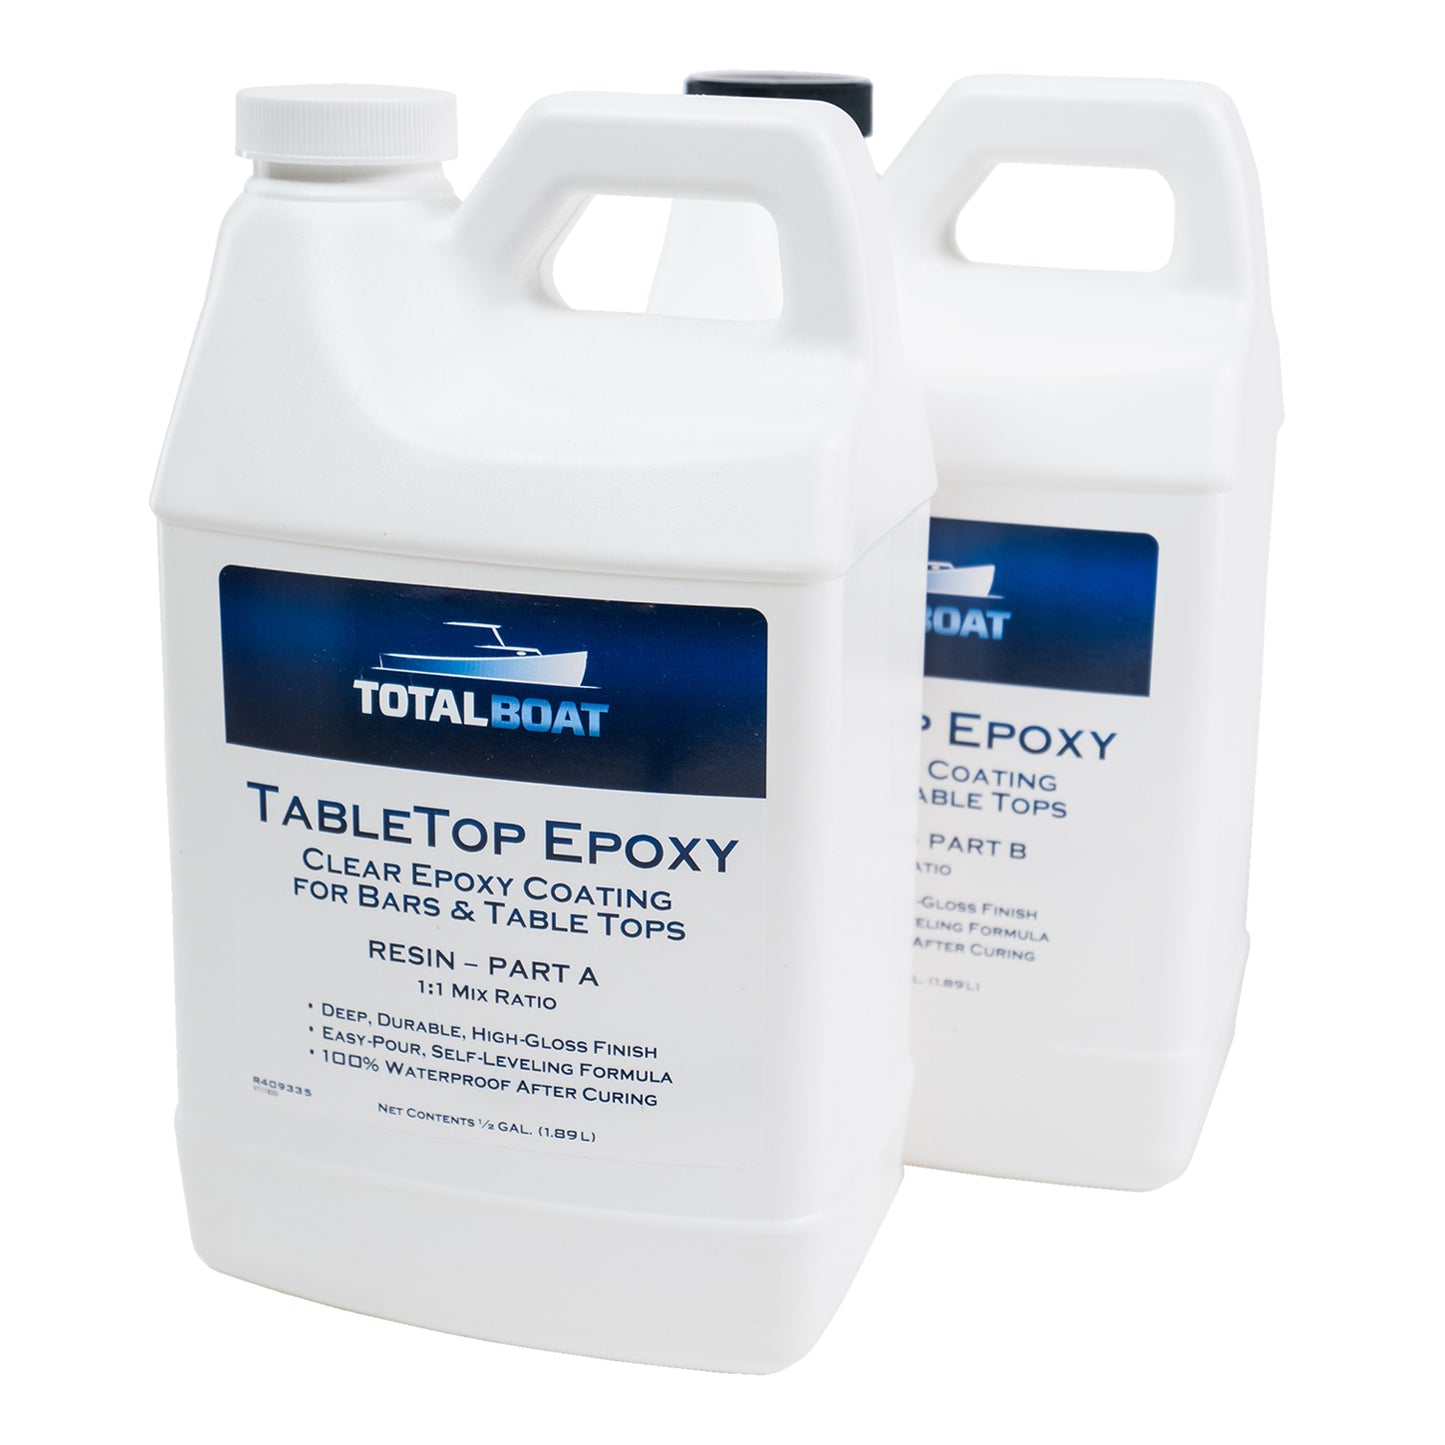 Promise Epoxy - 1.5 Gallon Kit of Deep Pour, Pourable Plastic Up